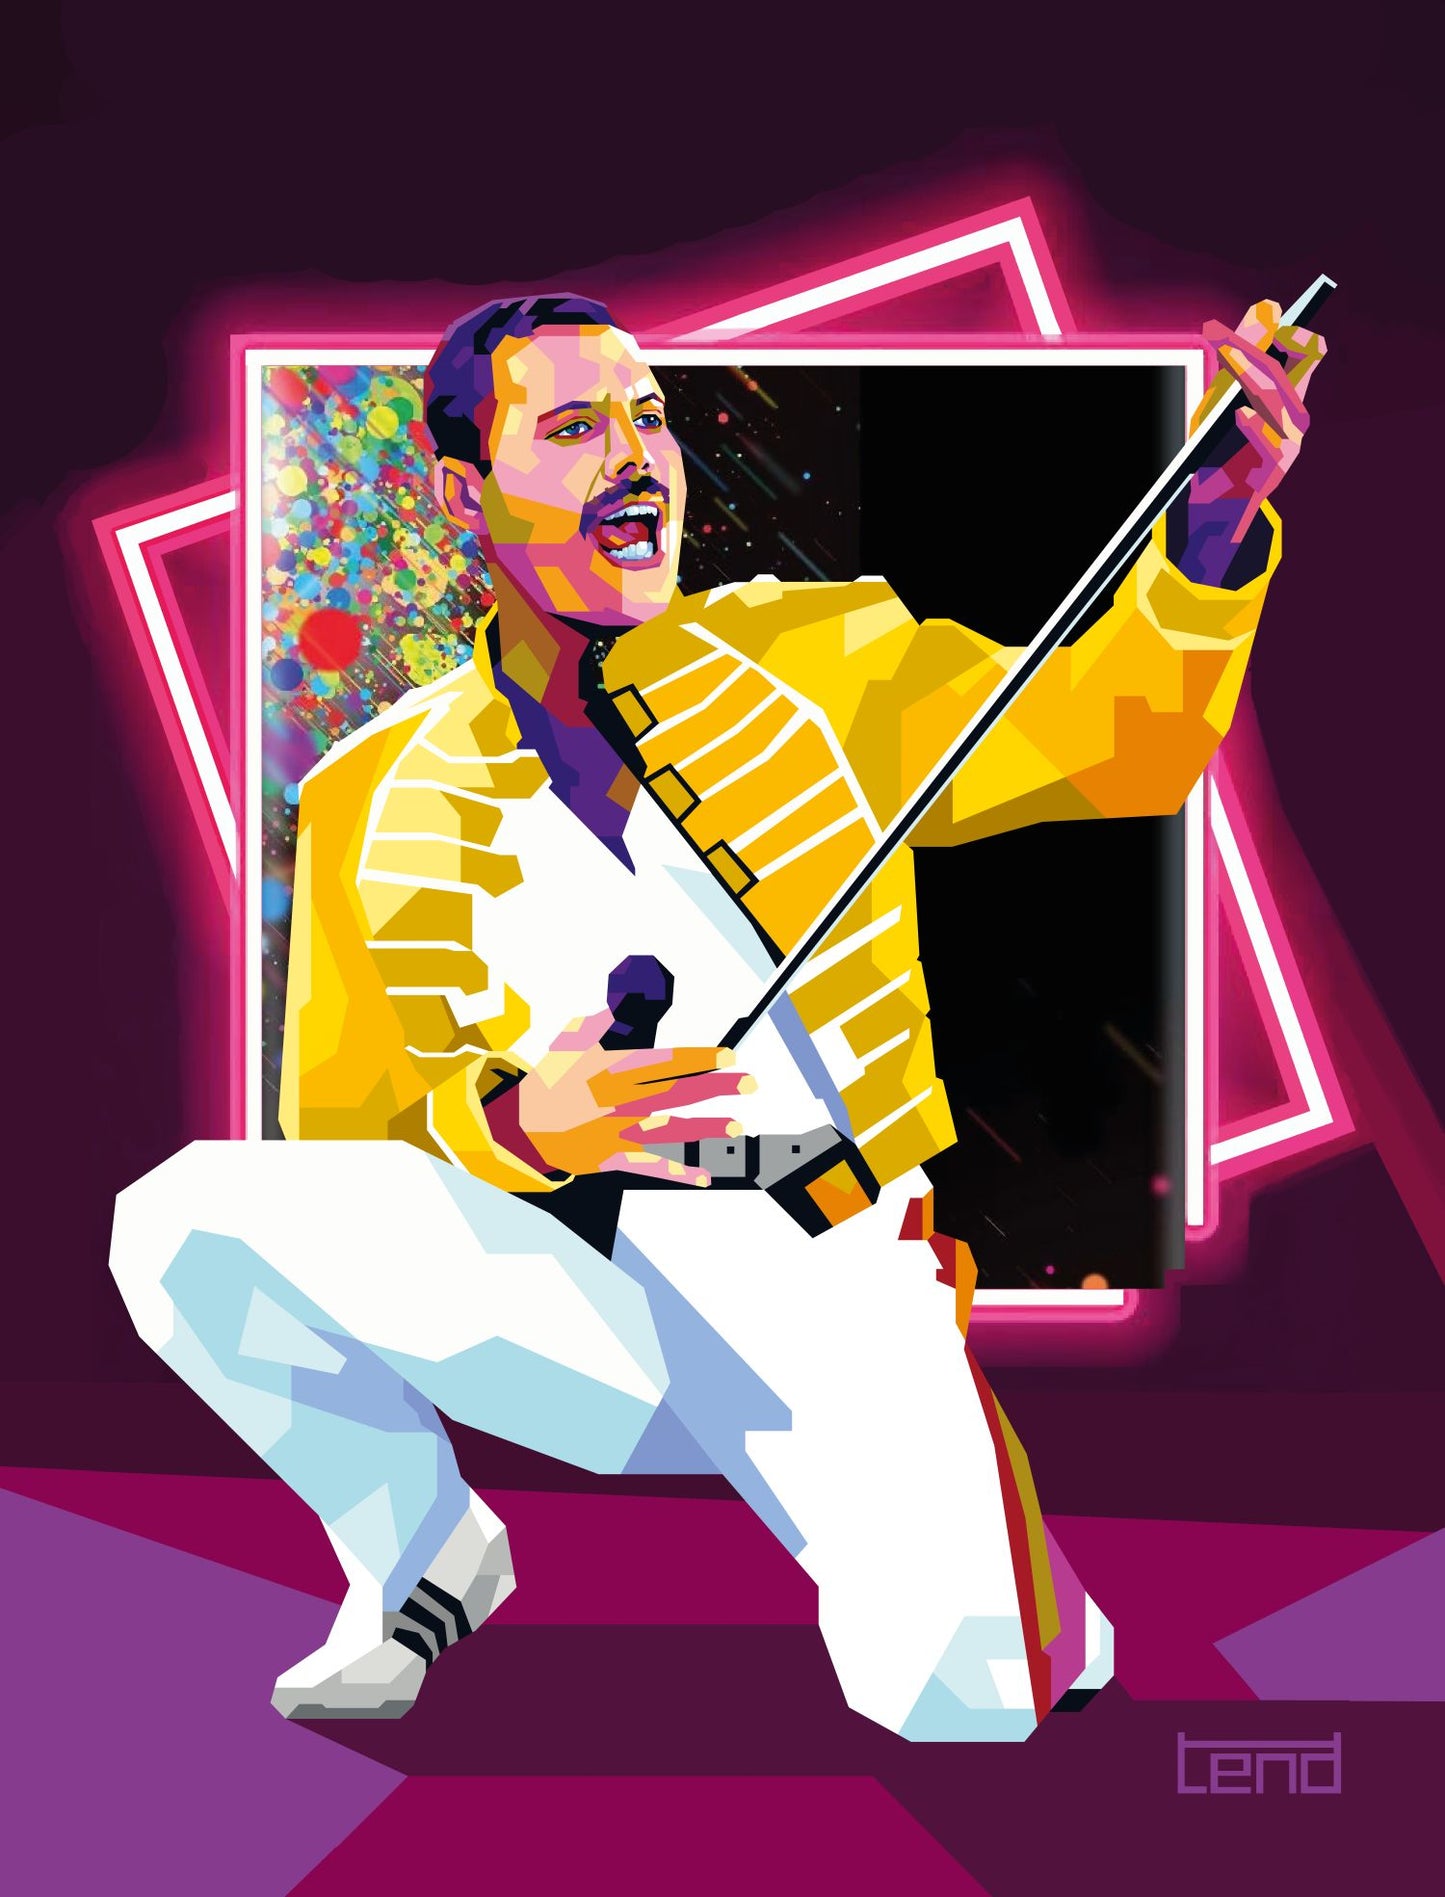 Torbjørn Endrerud "Freddie Mercury"